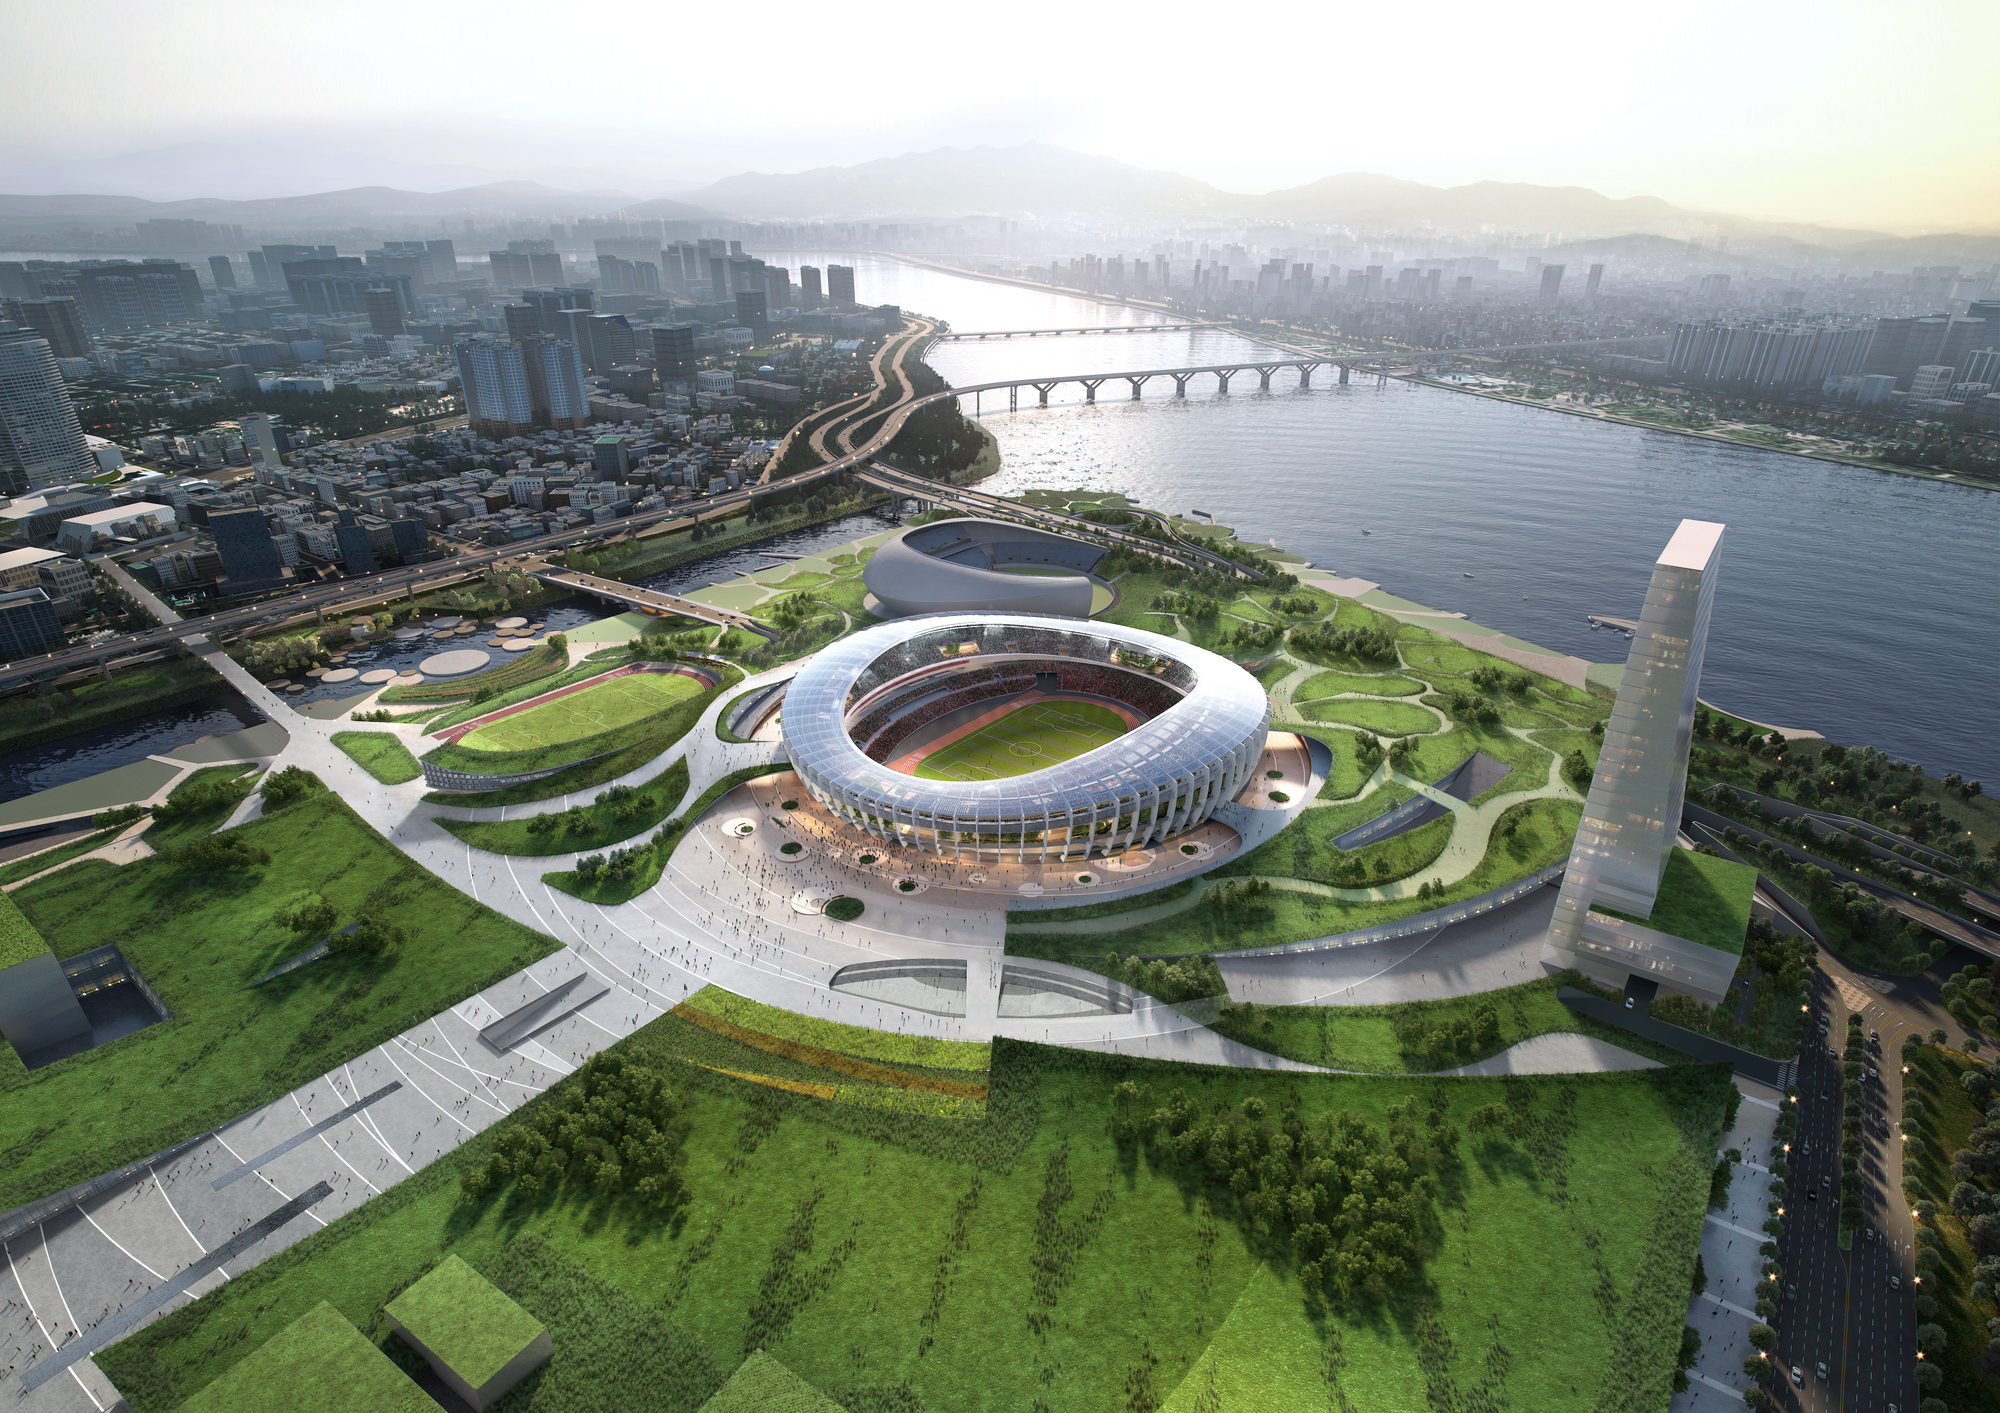 汉城奥林匹克体育馆周边的JAMSIL新建筑赢得设计竞赛